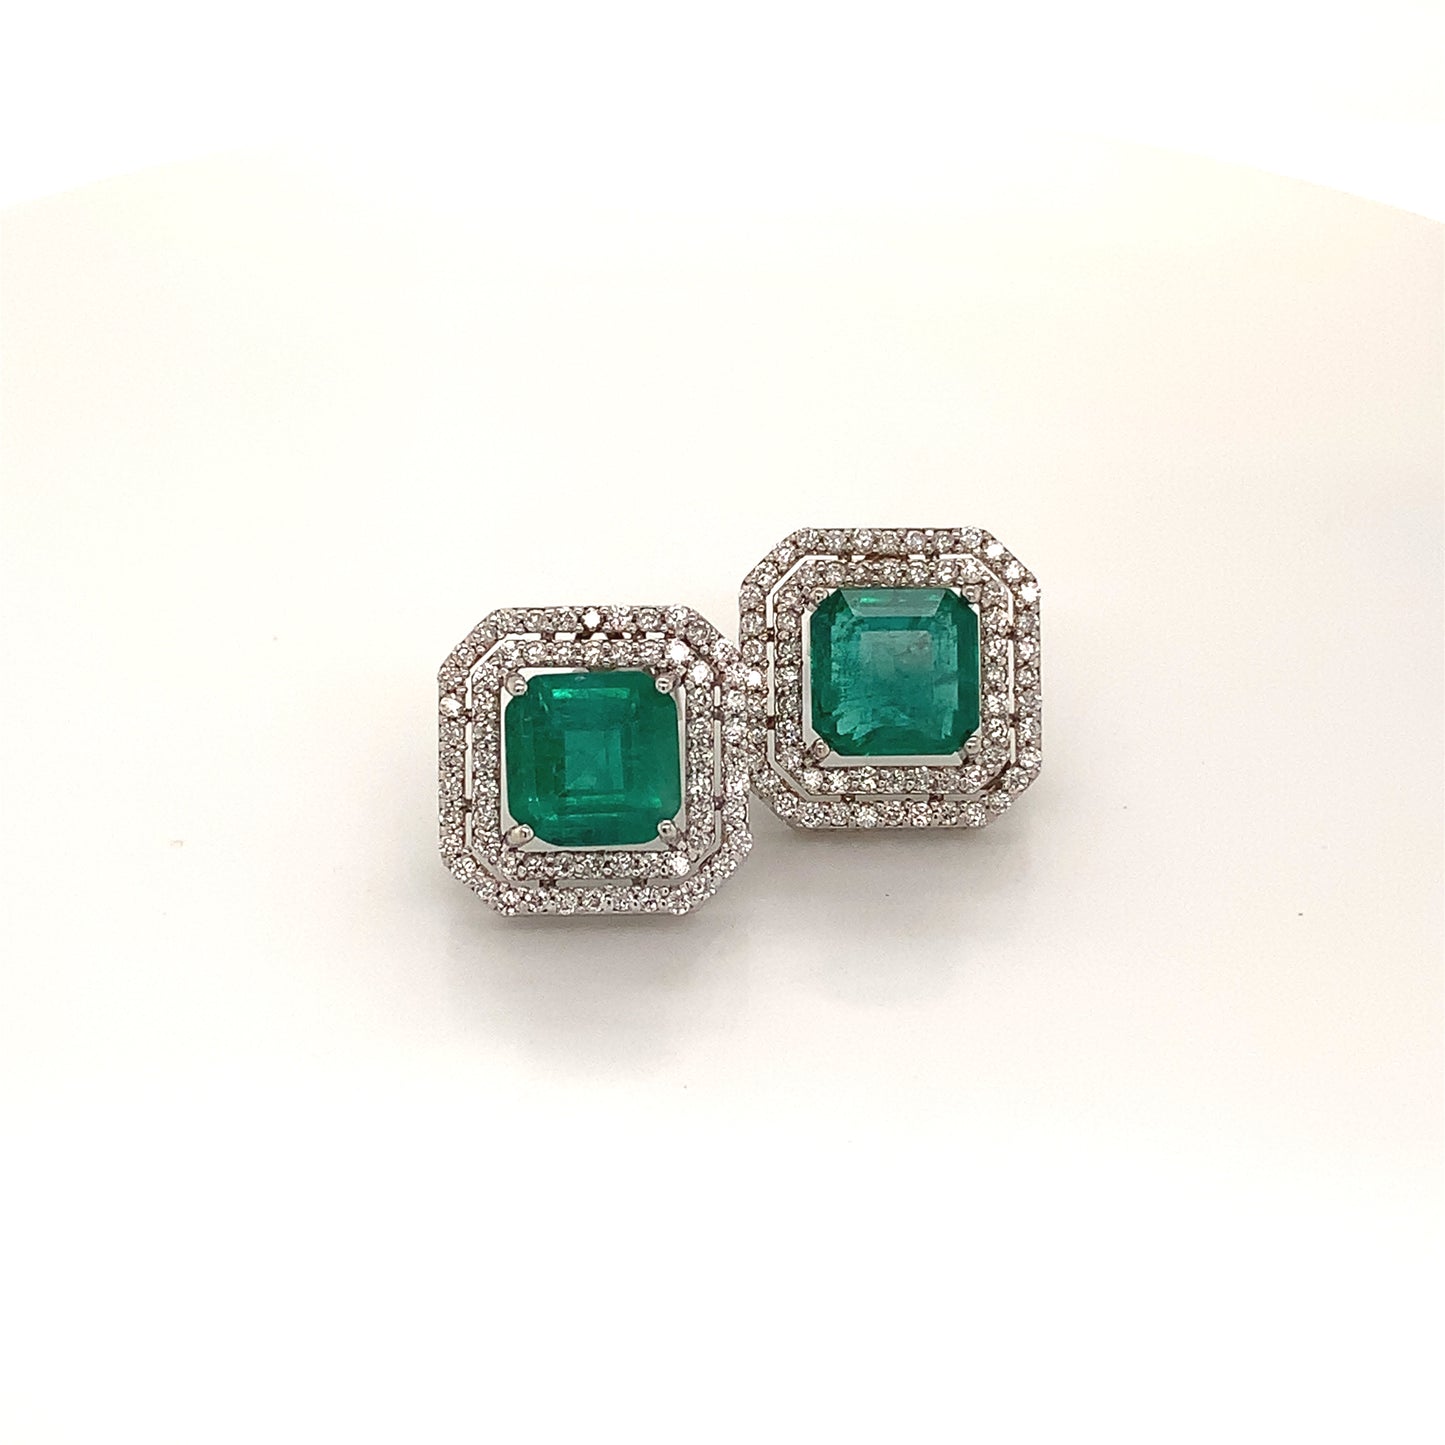 Natural Emerald Diamond Earrings 14k Gold 4.72 TCW Certified $8,950 113440 - Certified Fine Jewelry